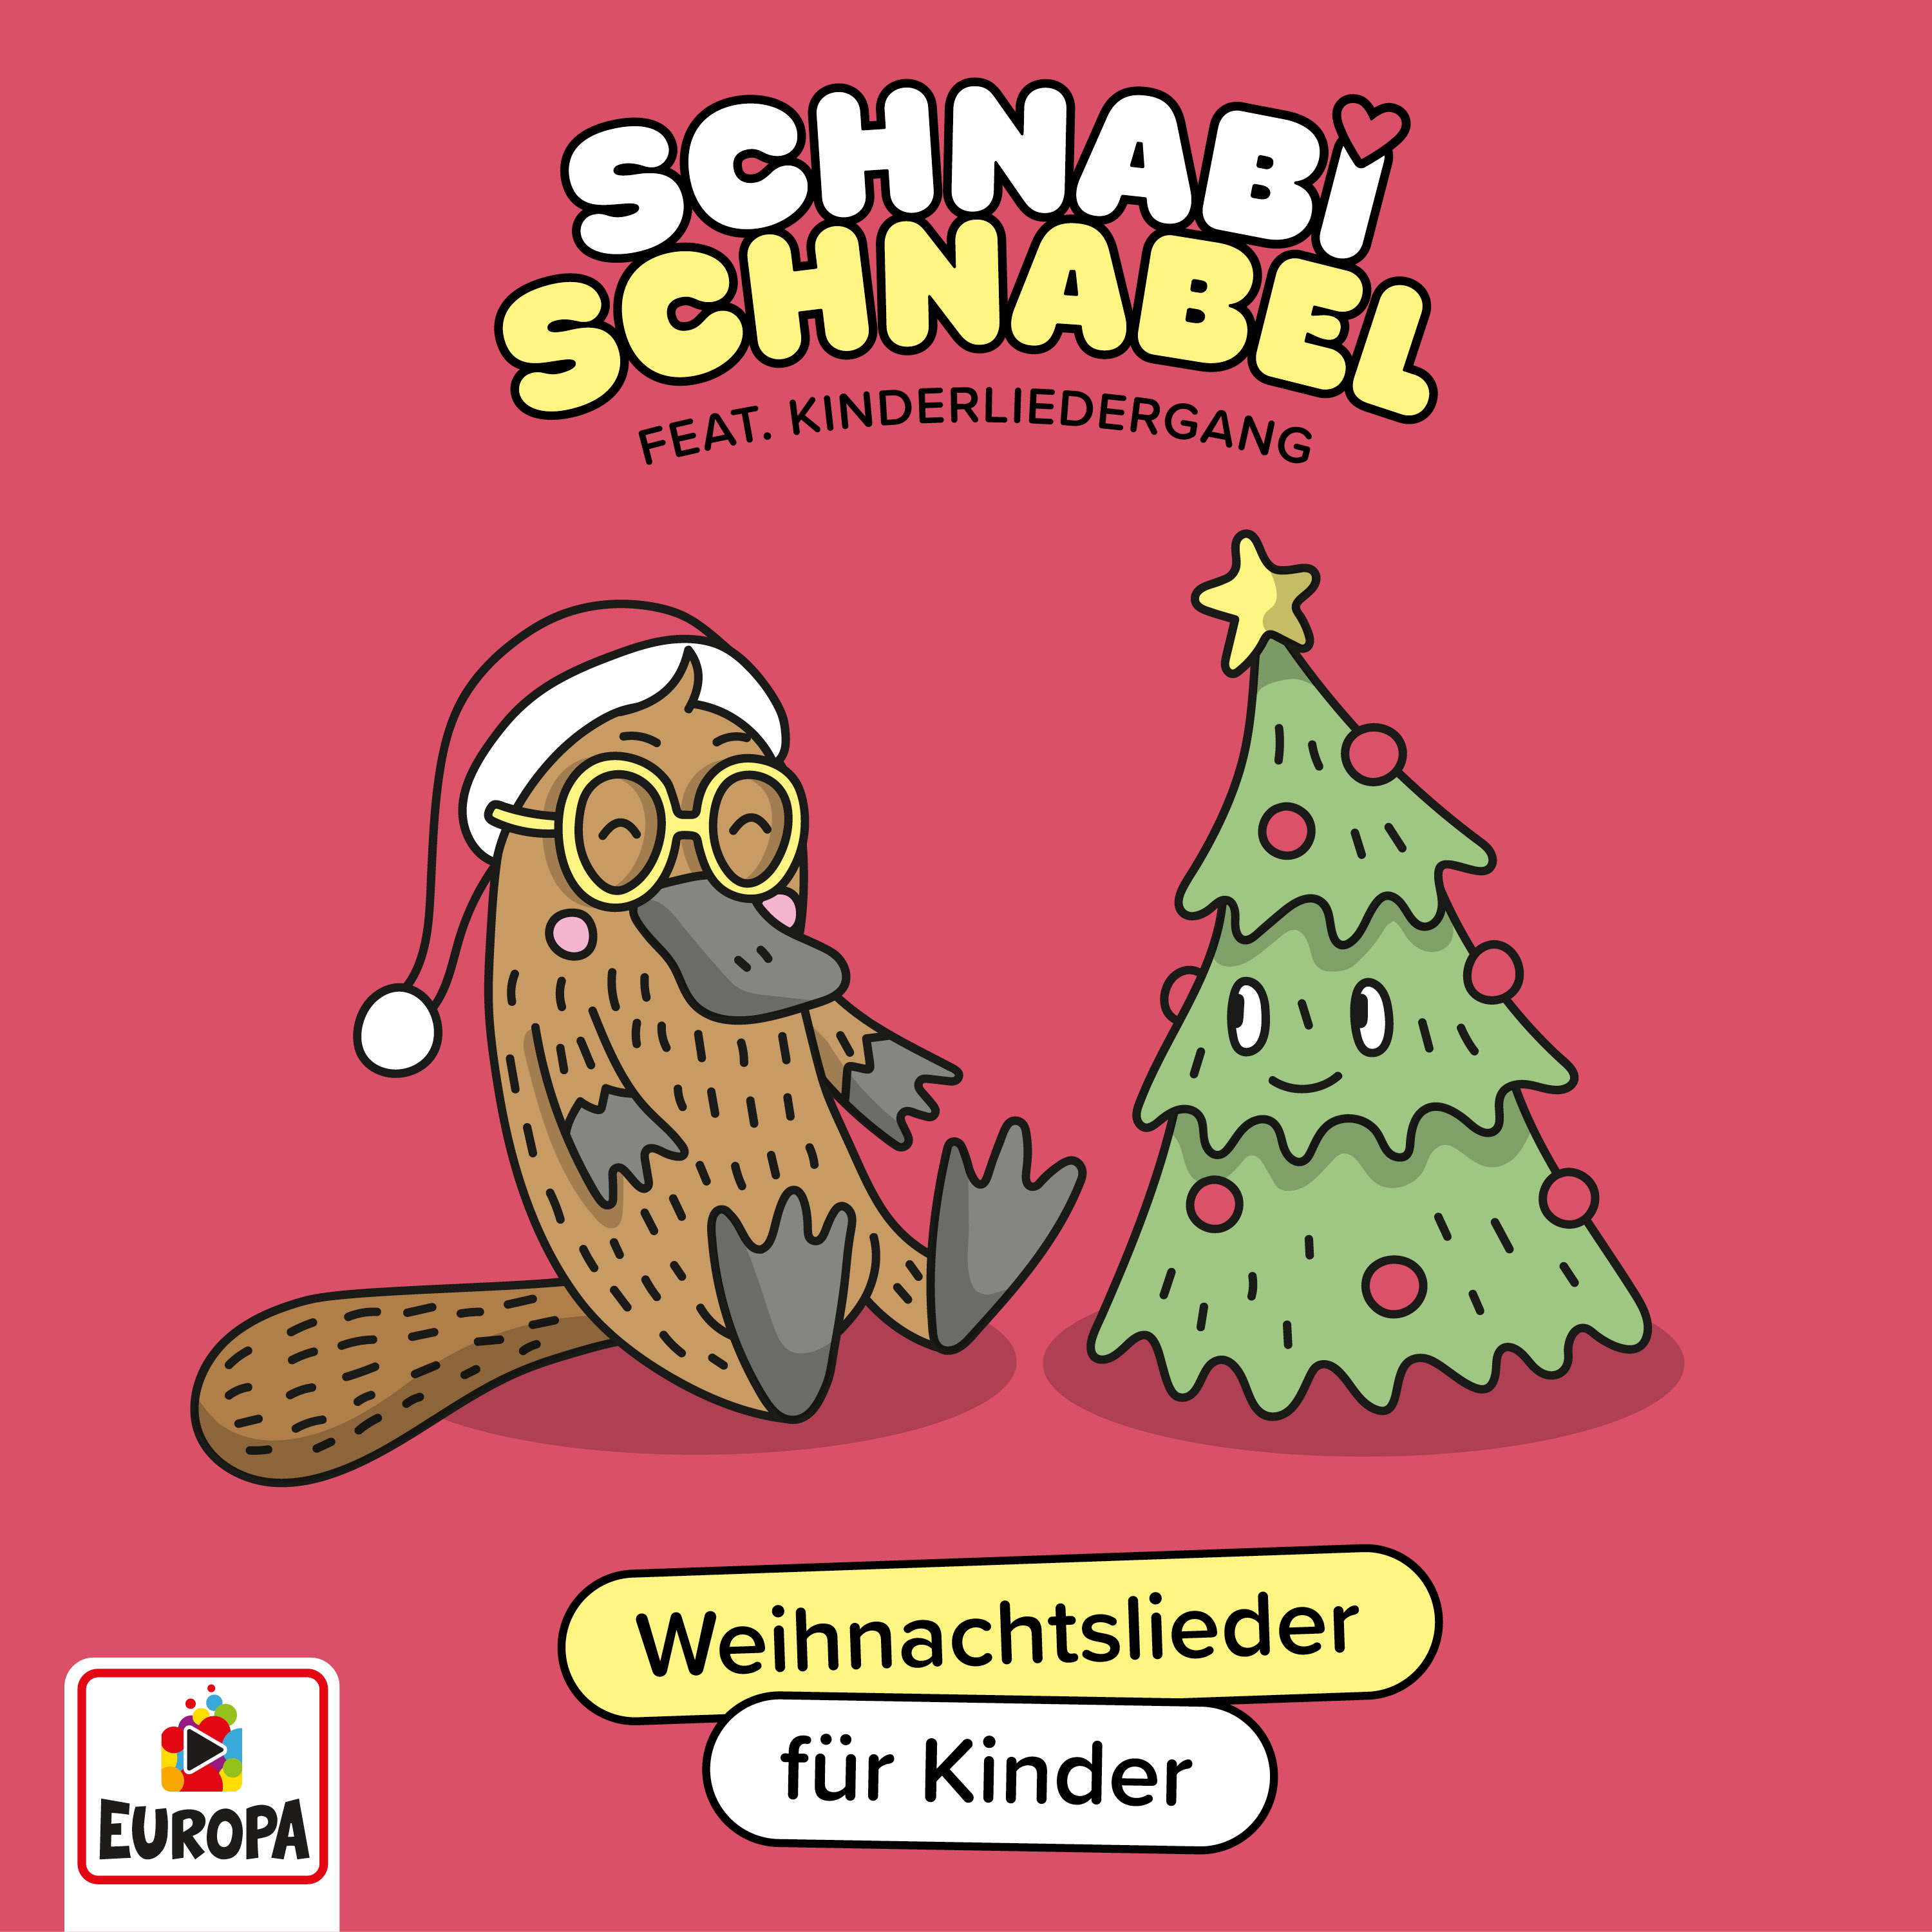 Schnabi Schnabel: Weihnachtslieder für Kinder